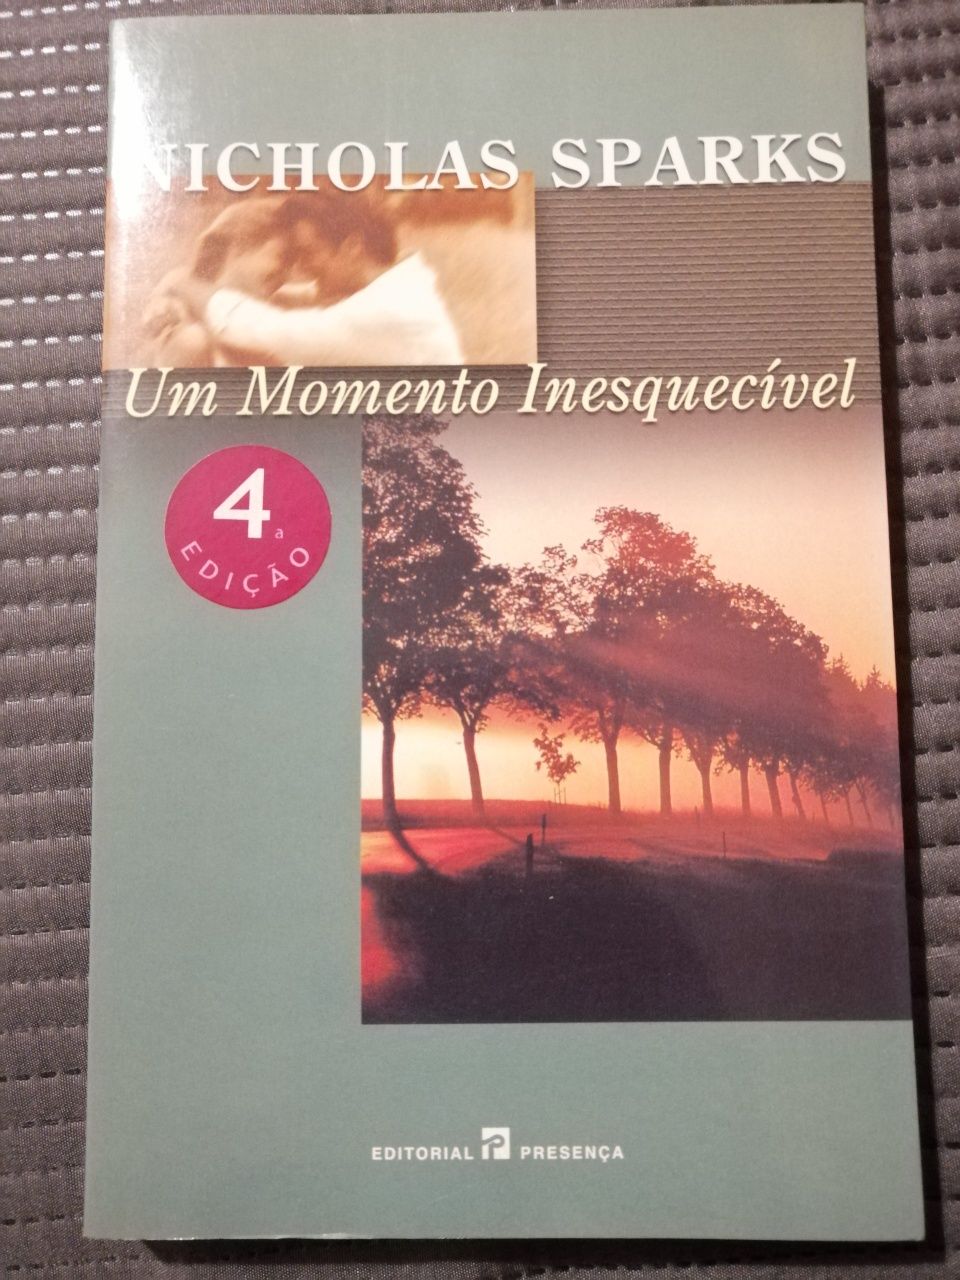 Livro "Um momento inesquecível" - Nicholas Sparks